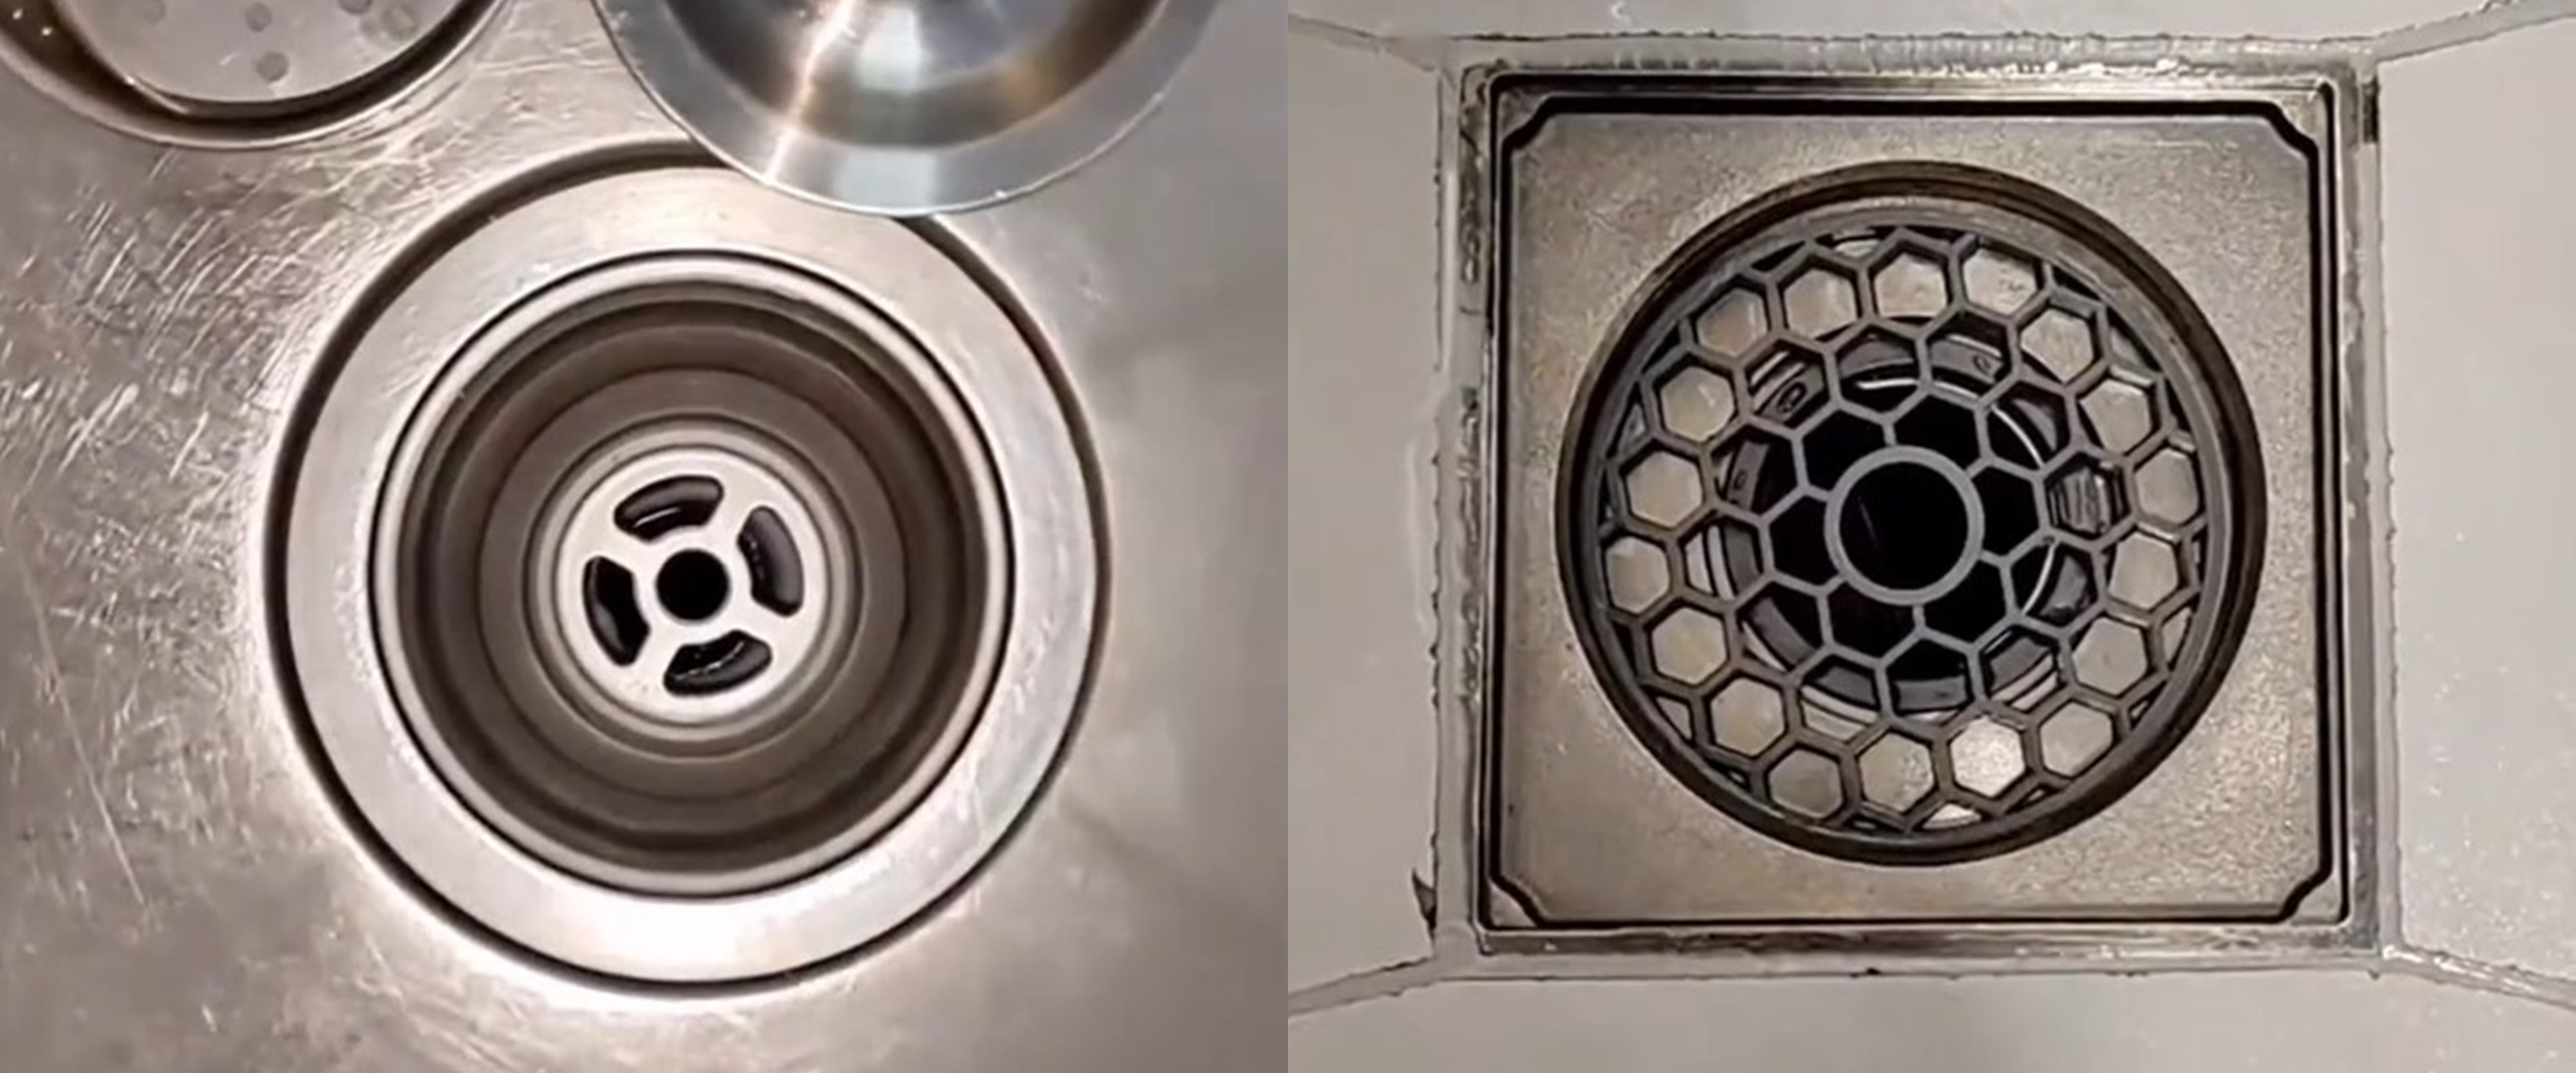 Cukup tambah 2 bahan dapur, ini cara hilangkan bau tak sedap pada saluran pembuangan air di rumah